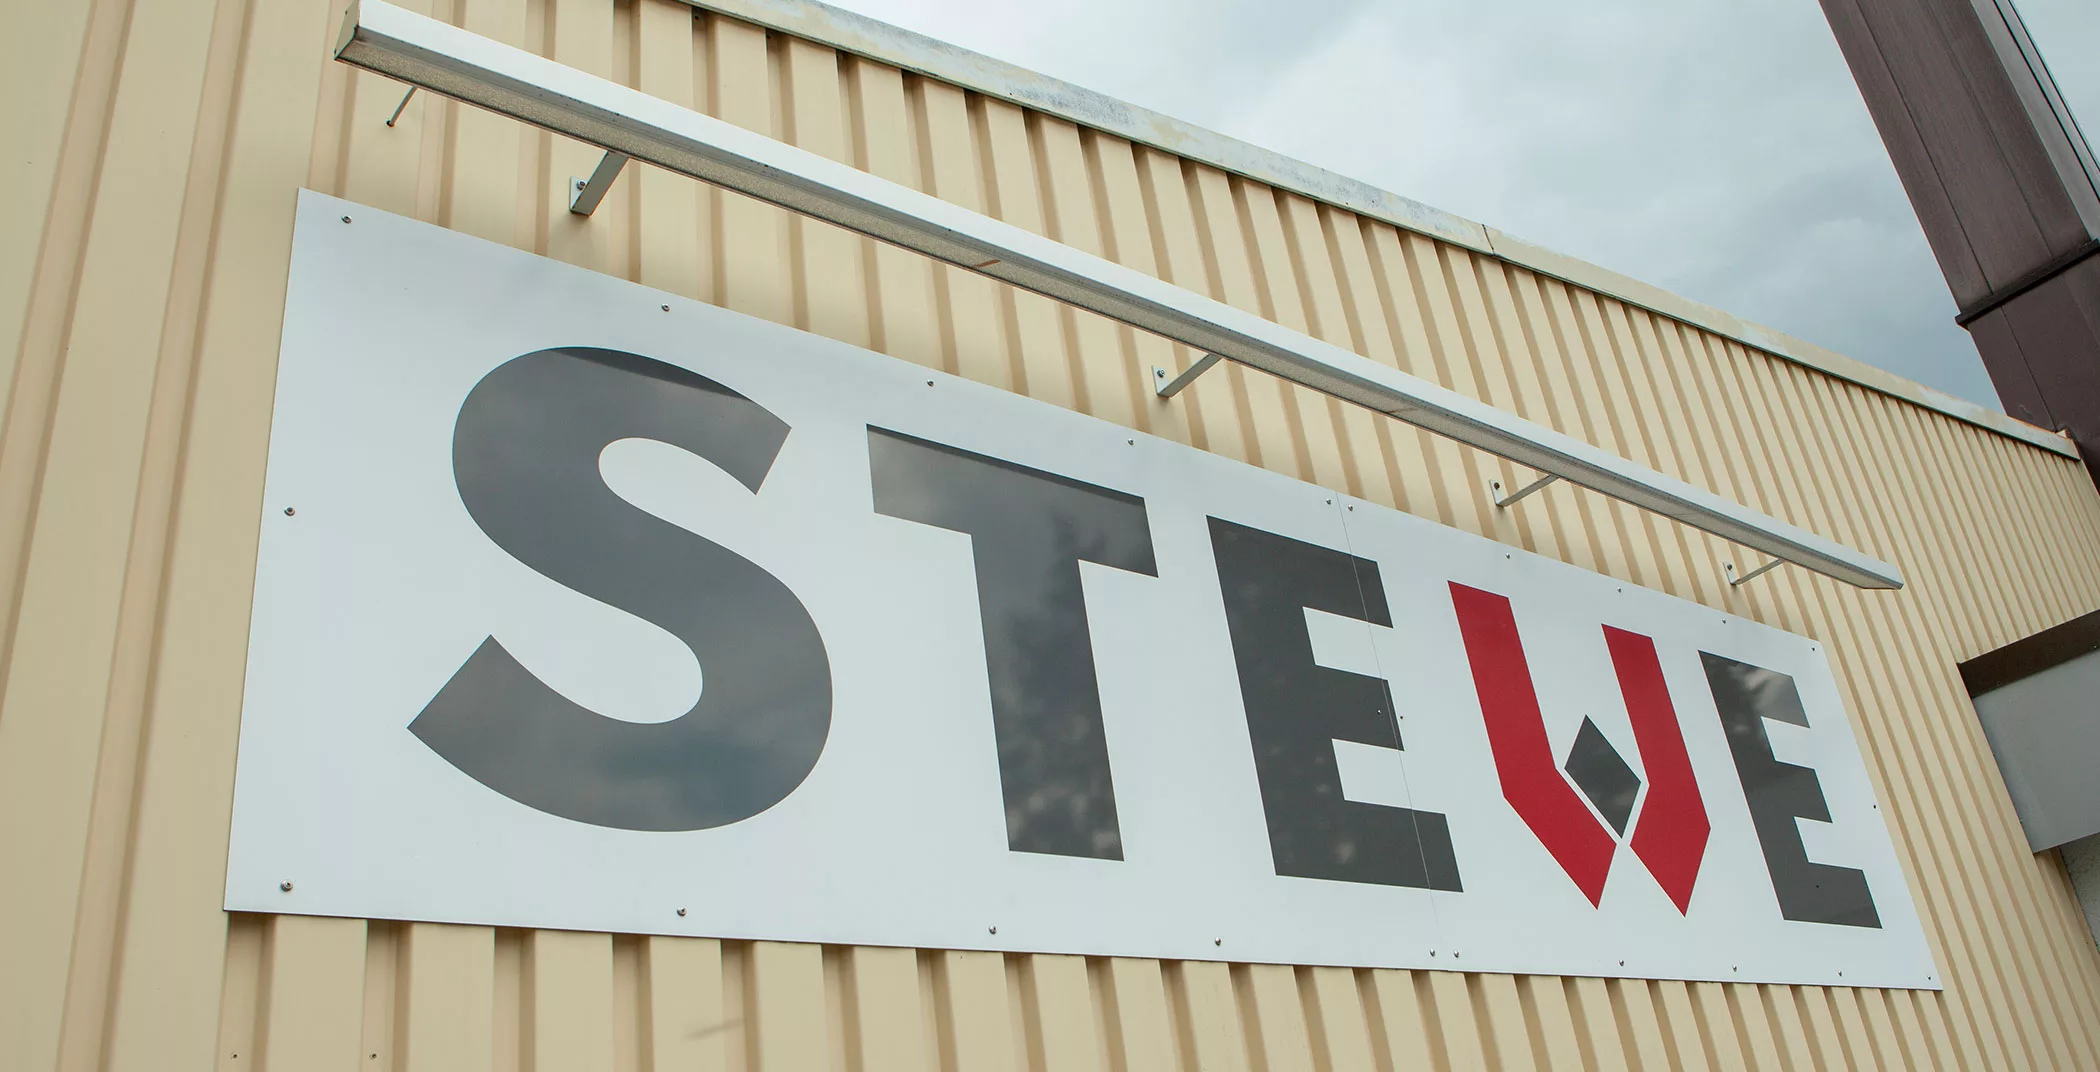 Stewe . CNC-Fertigung . 20 Jahre STWEW GmbH